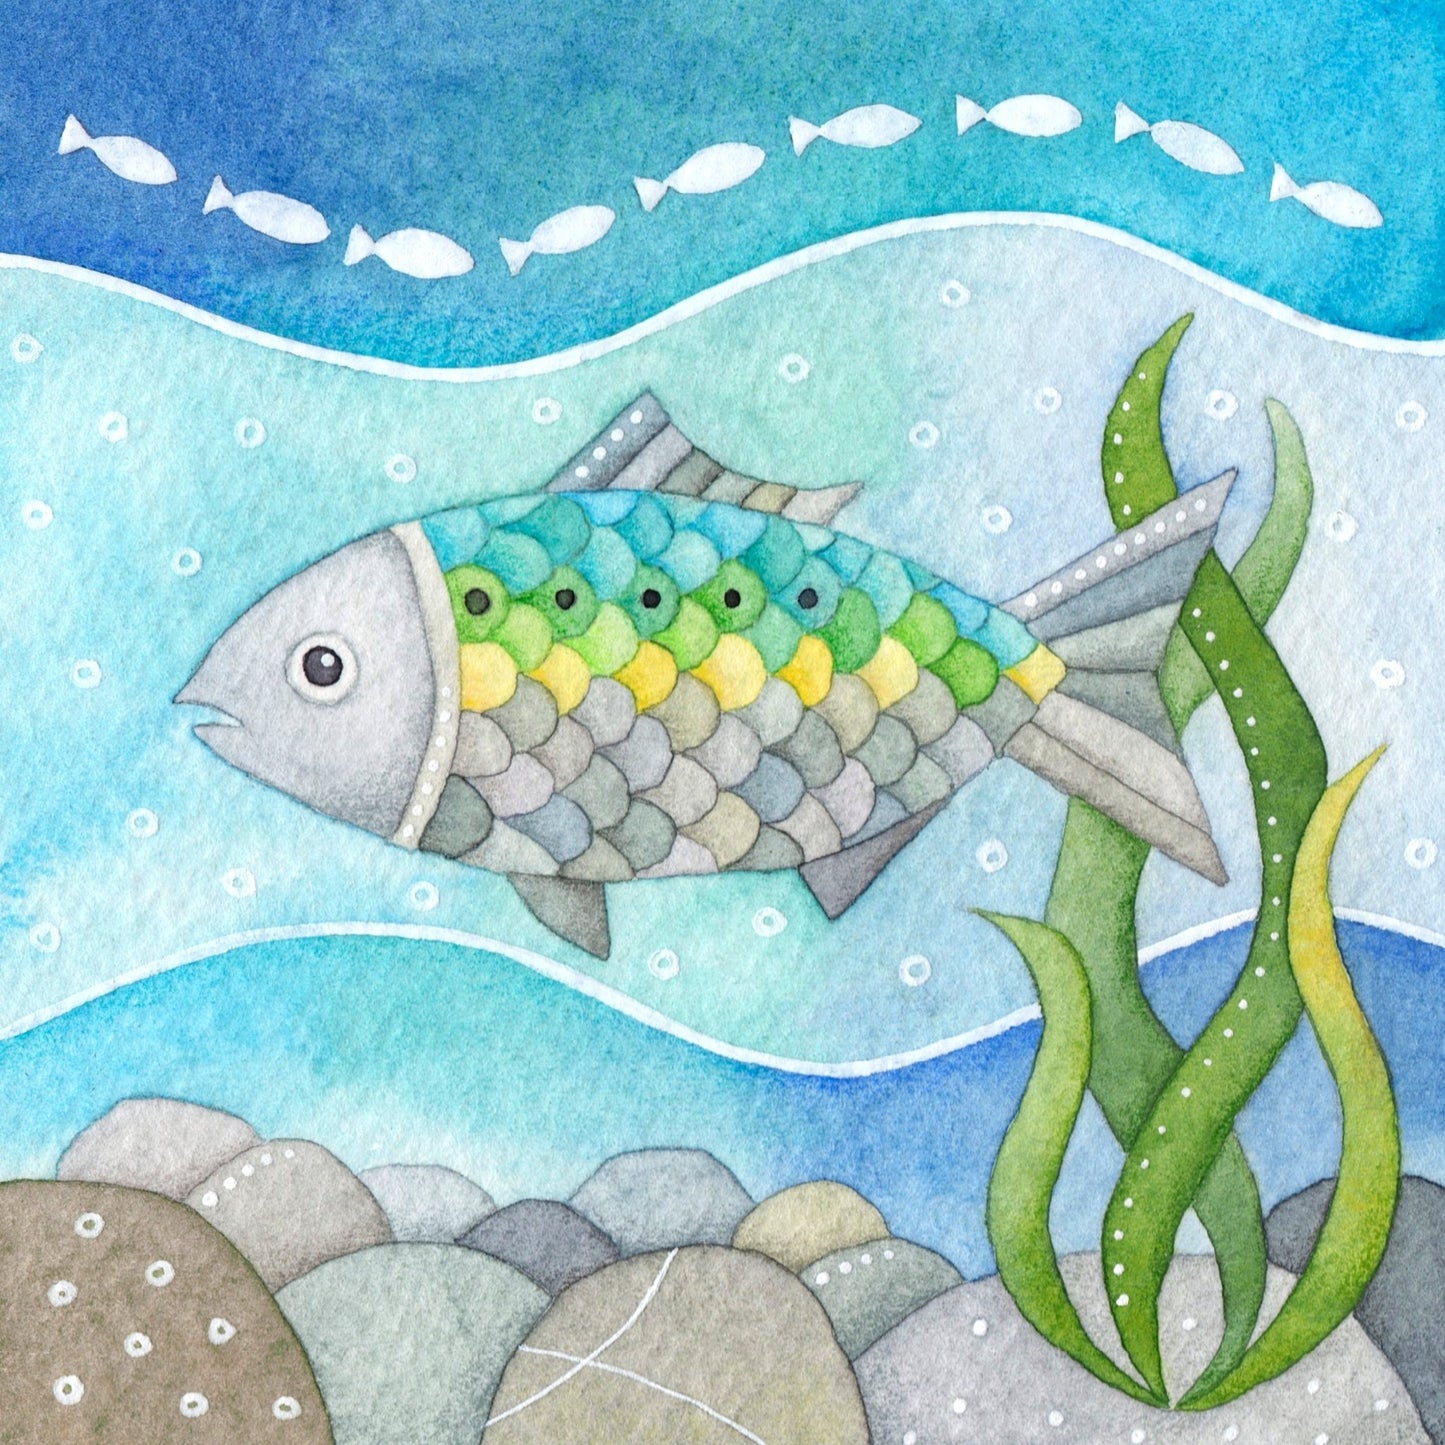 Greetings Card - Underwater Fish - Twait Shad - Seaside Paintings - East Neuk Beach Crafts